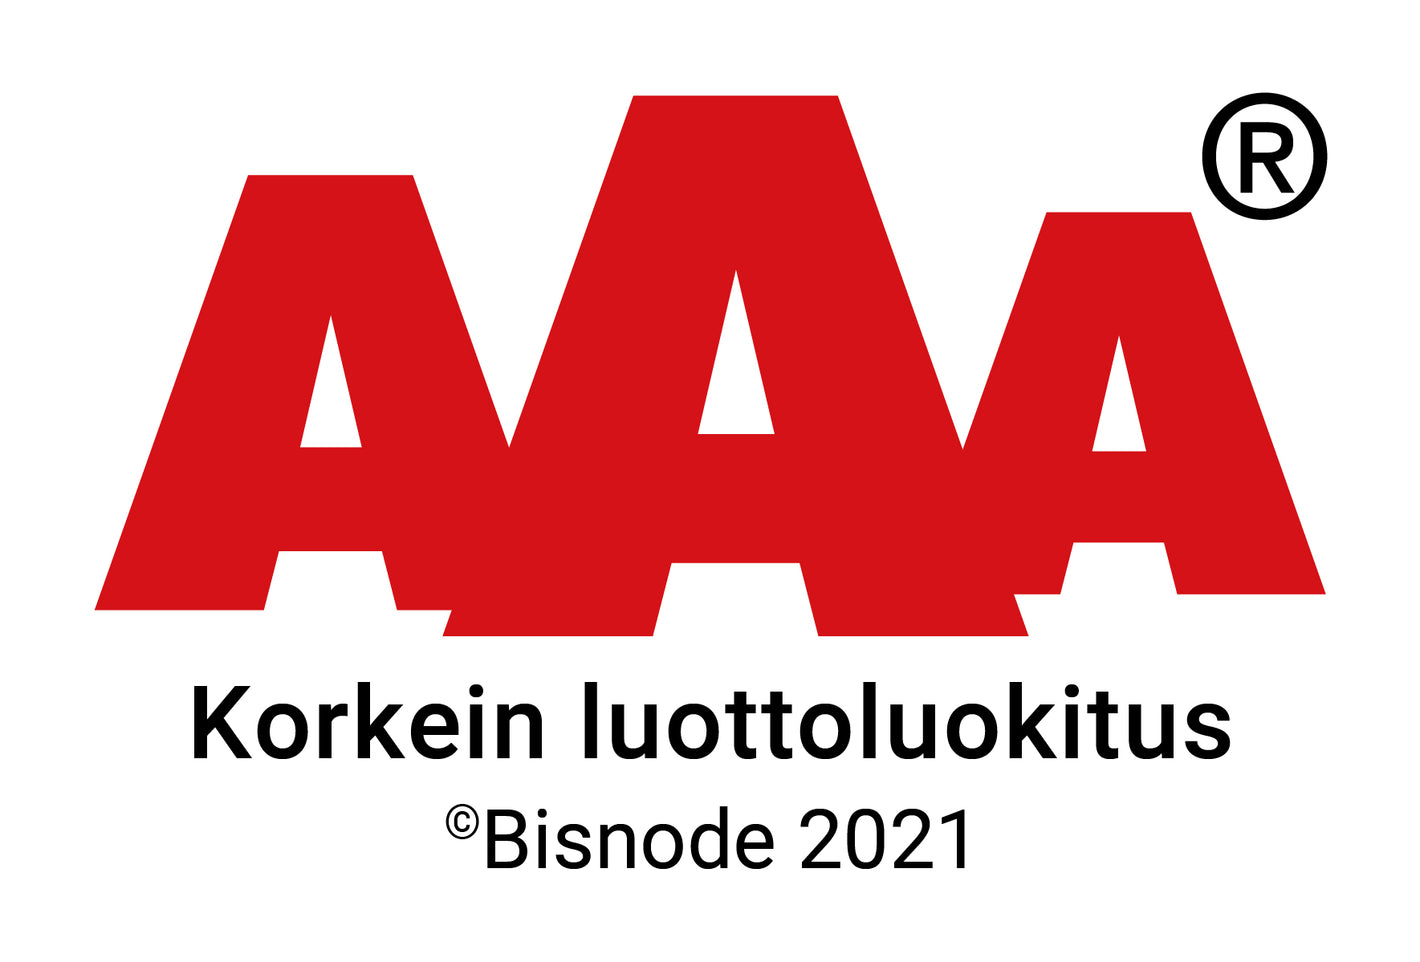 AAA - Korkein luottoluokitus -logo